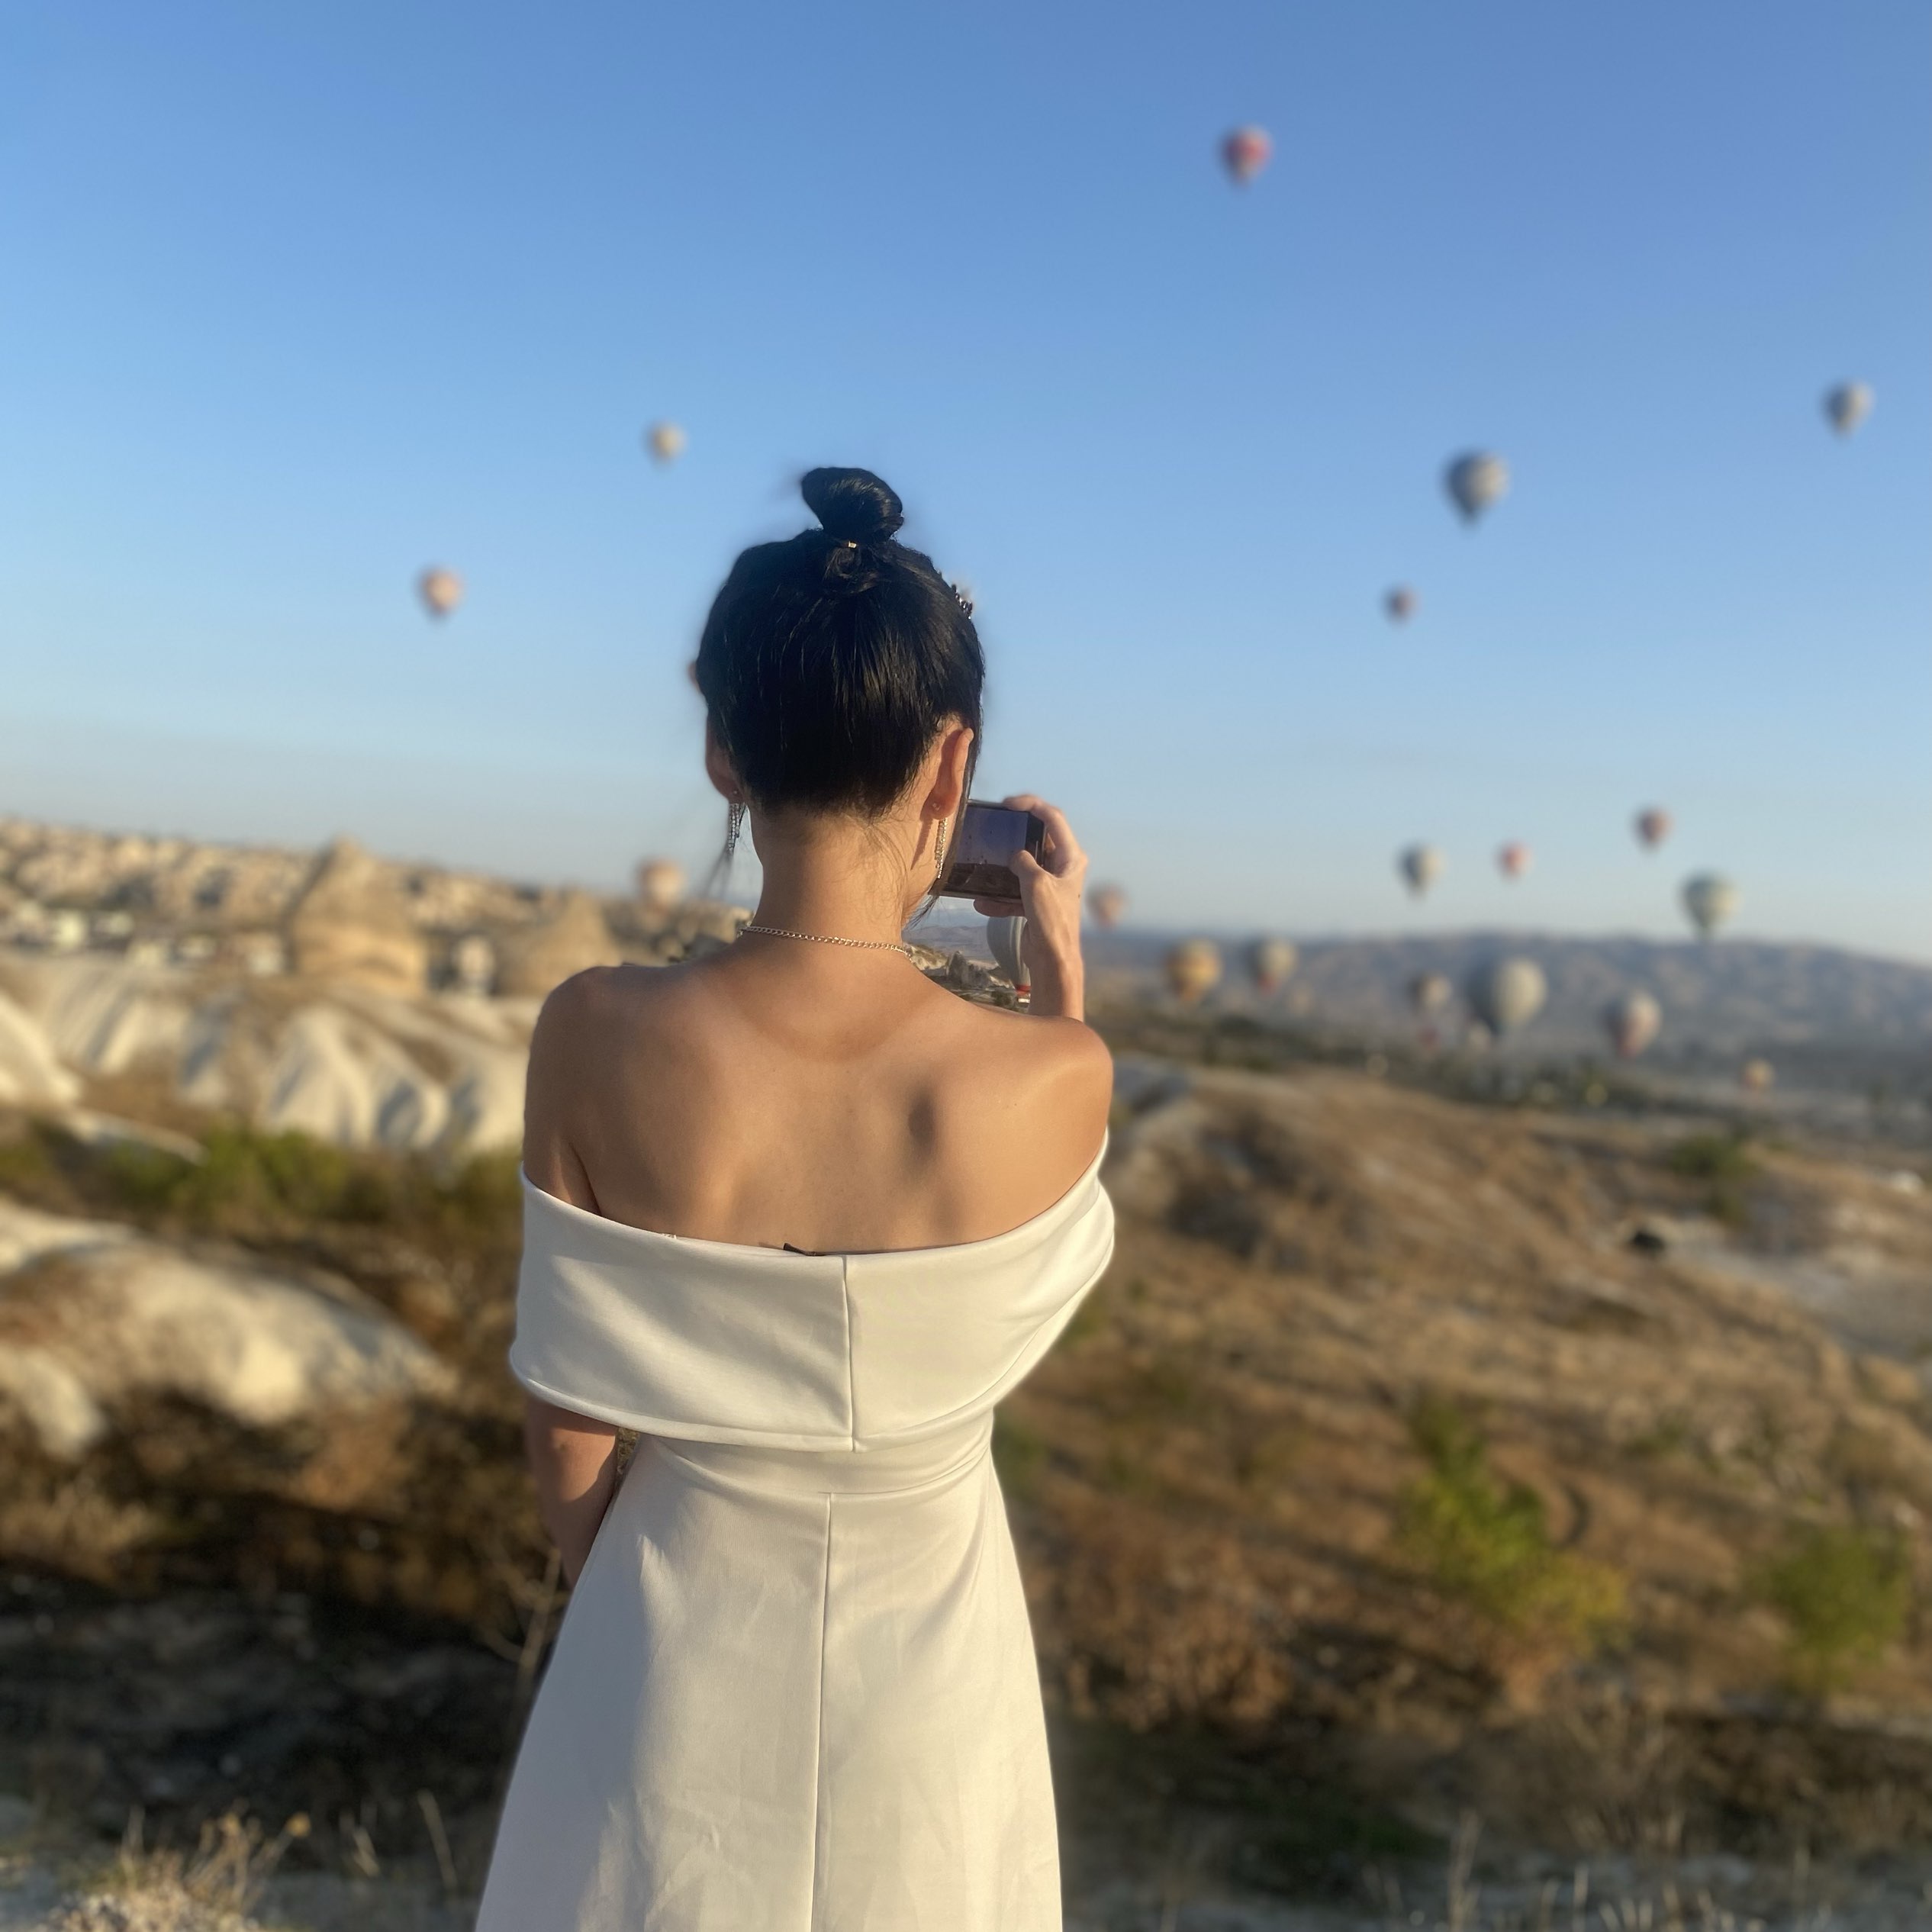 土耳其游记 Cappadocia 拍出与热气球背景的网美照